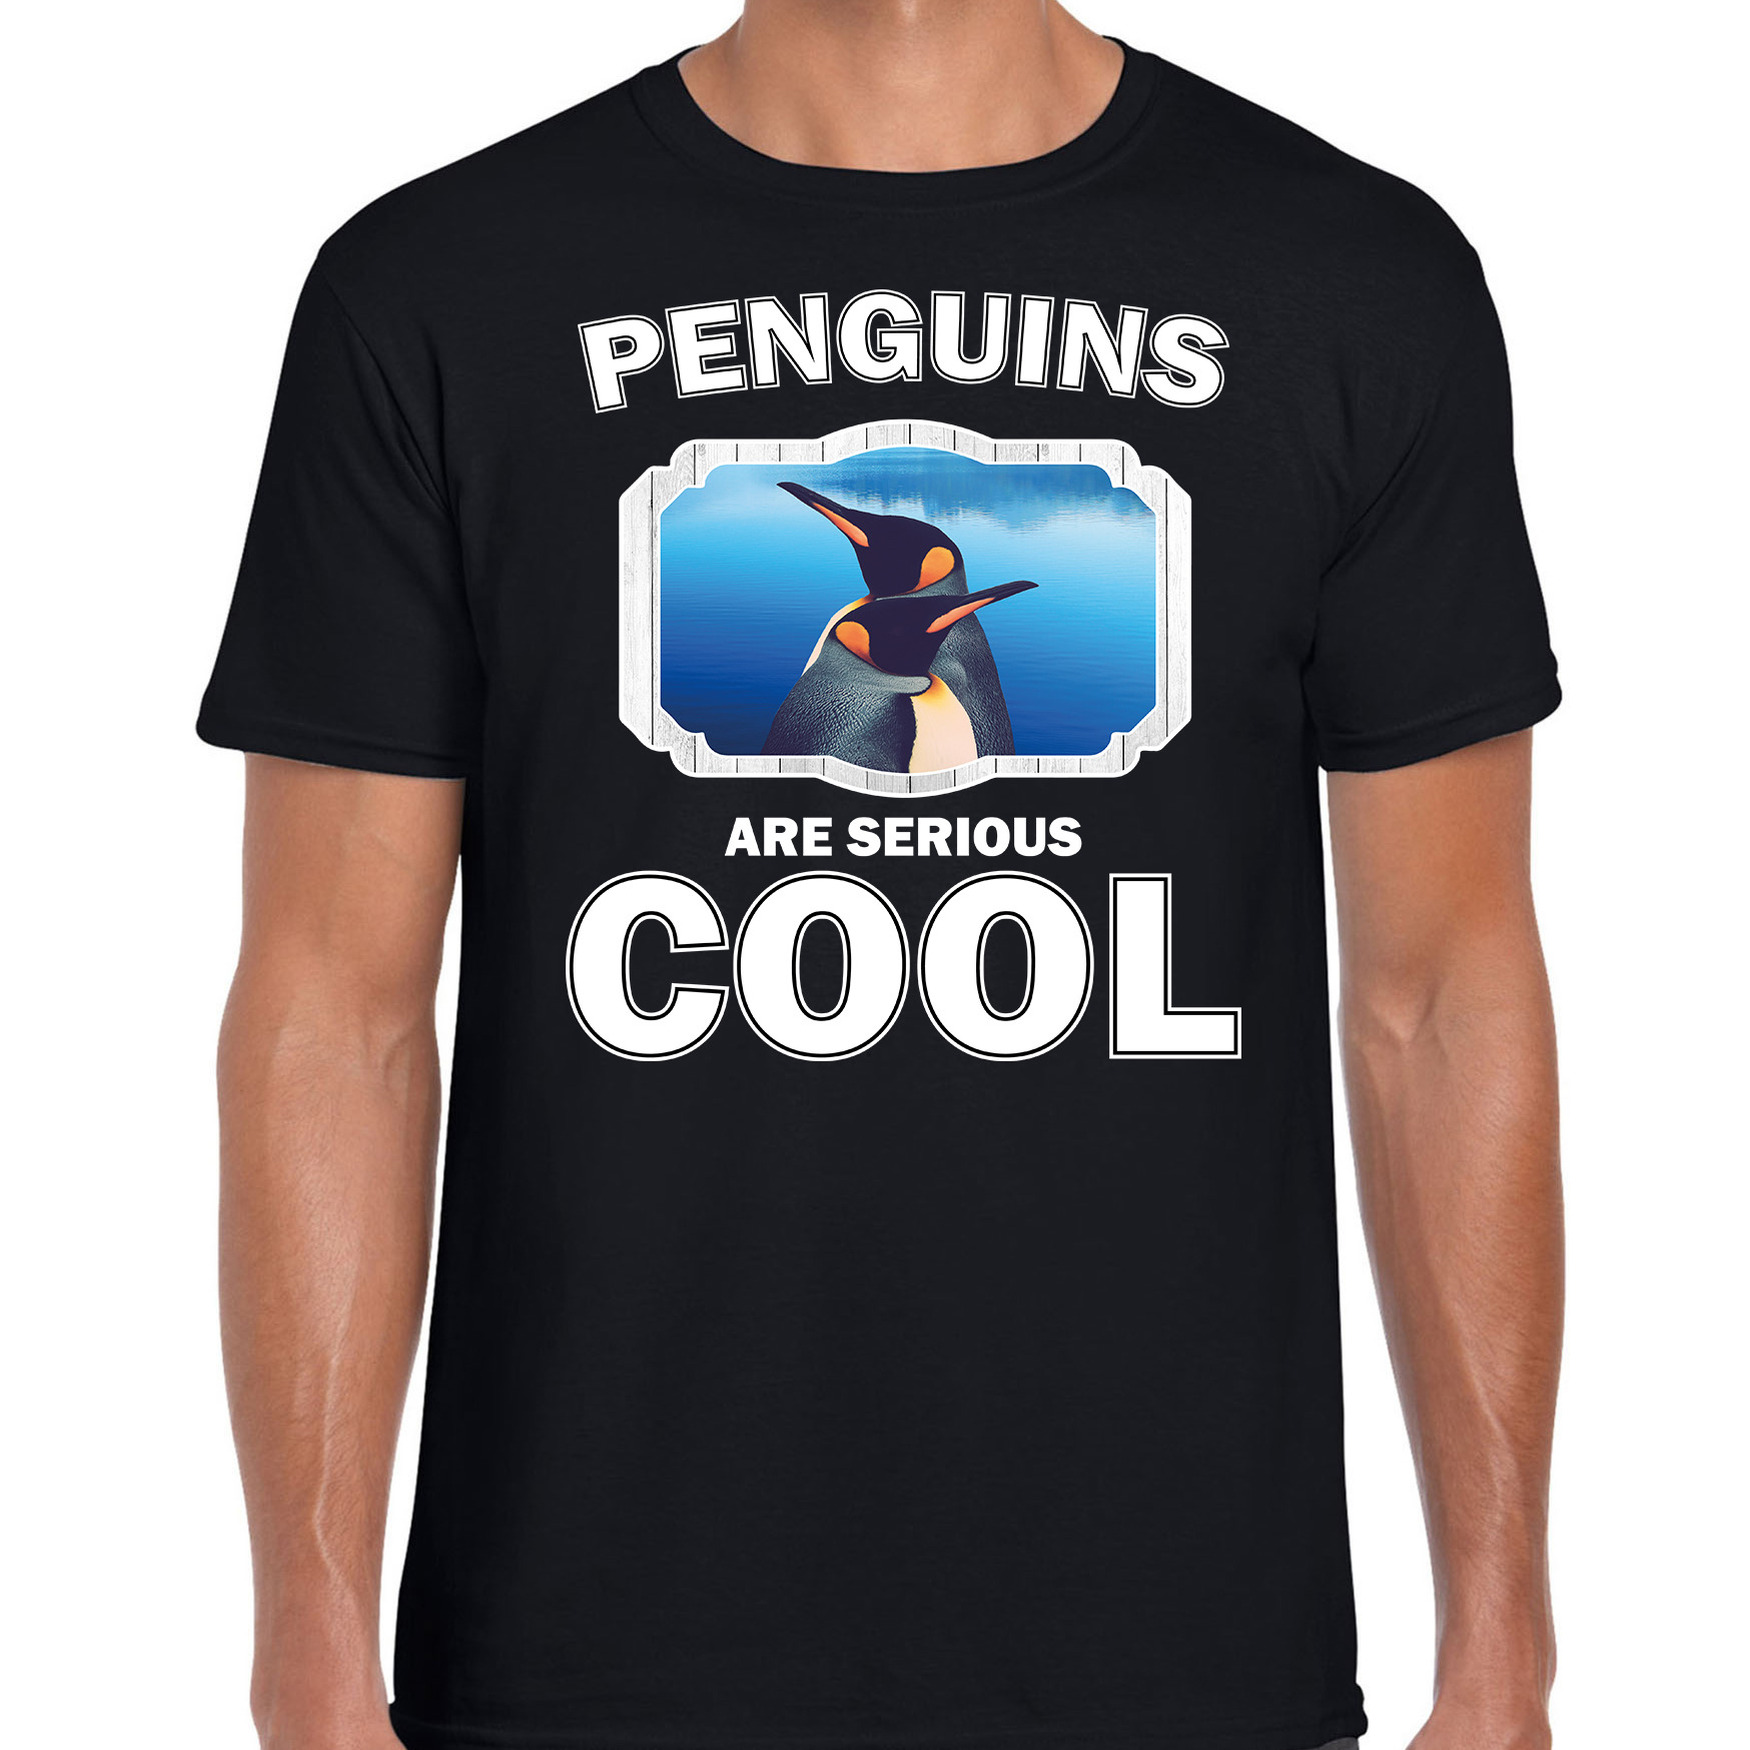 Dieren pinguin t-shirt zwart heren - penguins are cool shirt